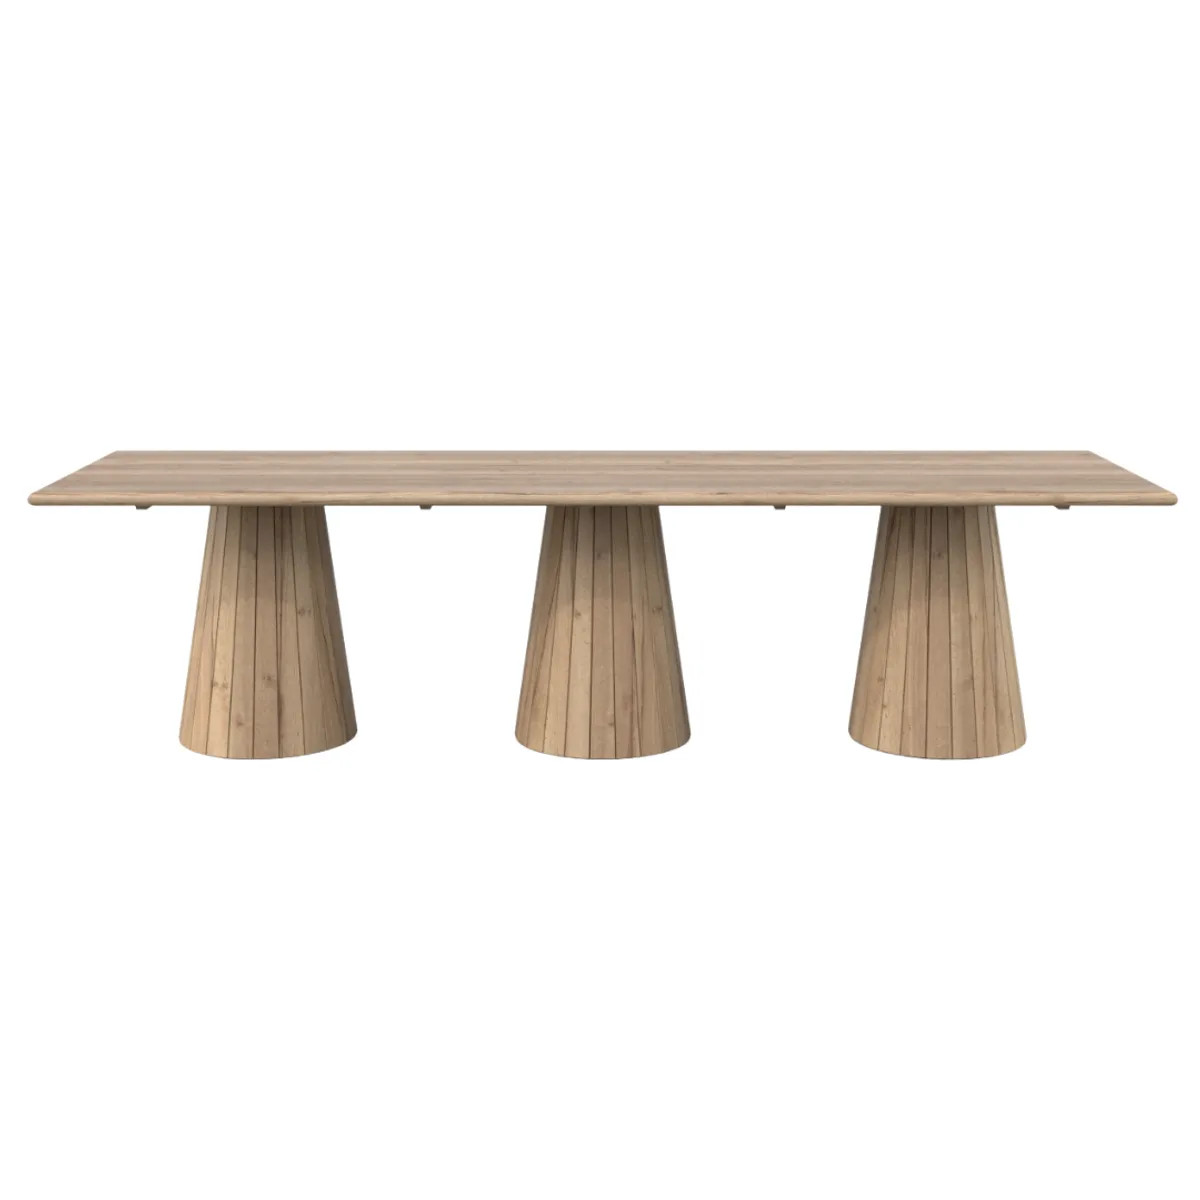 Bespoke metropole wooden table 2